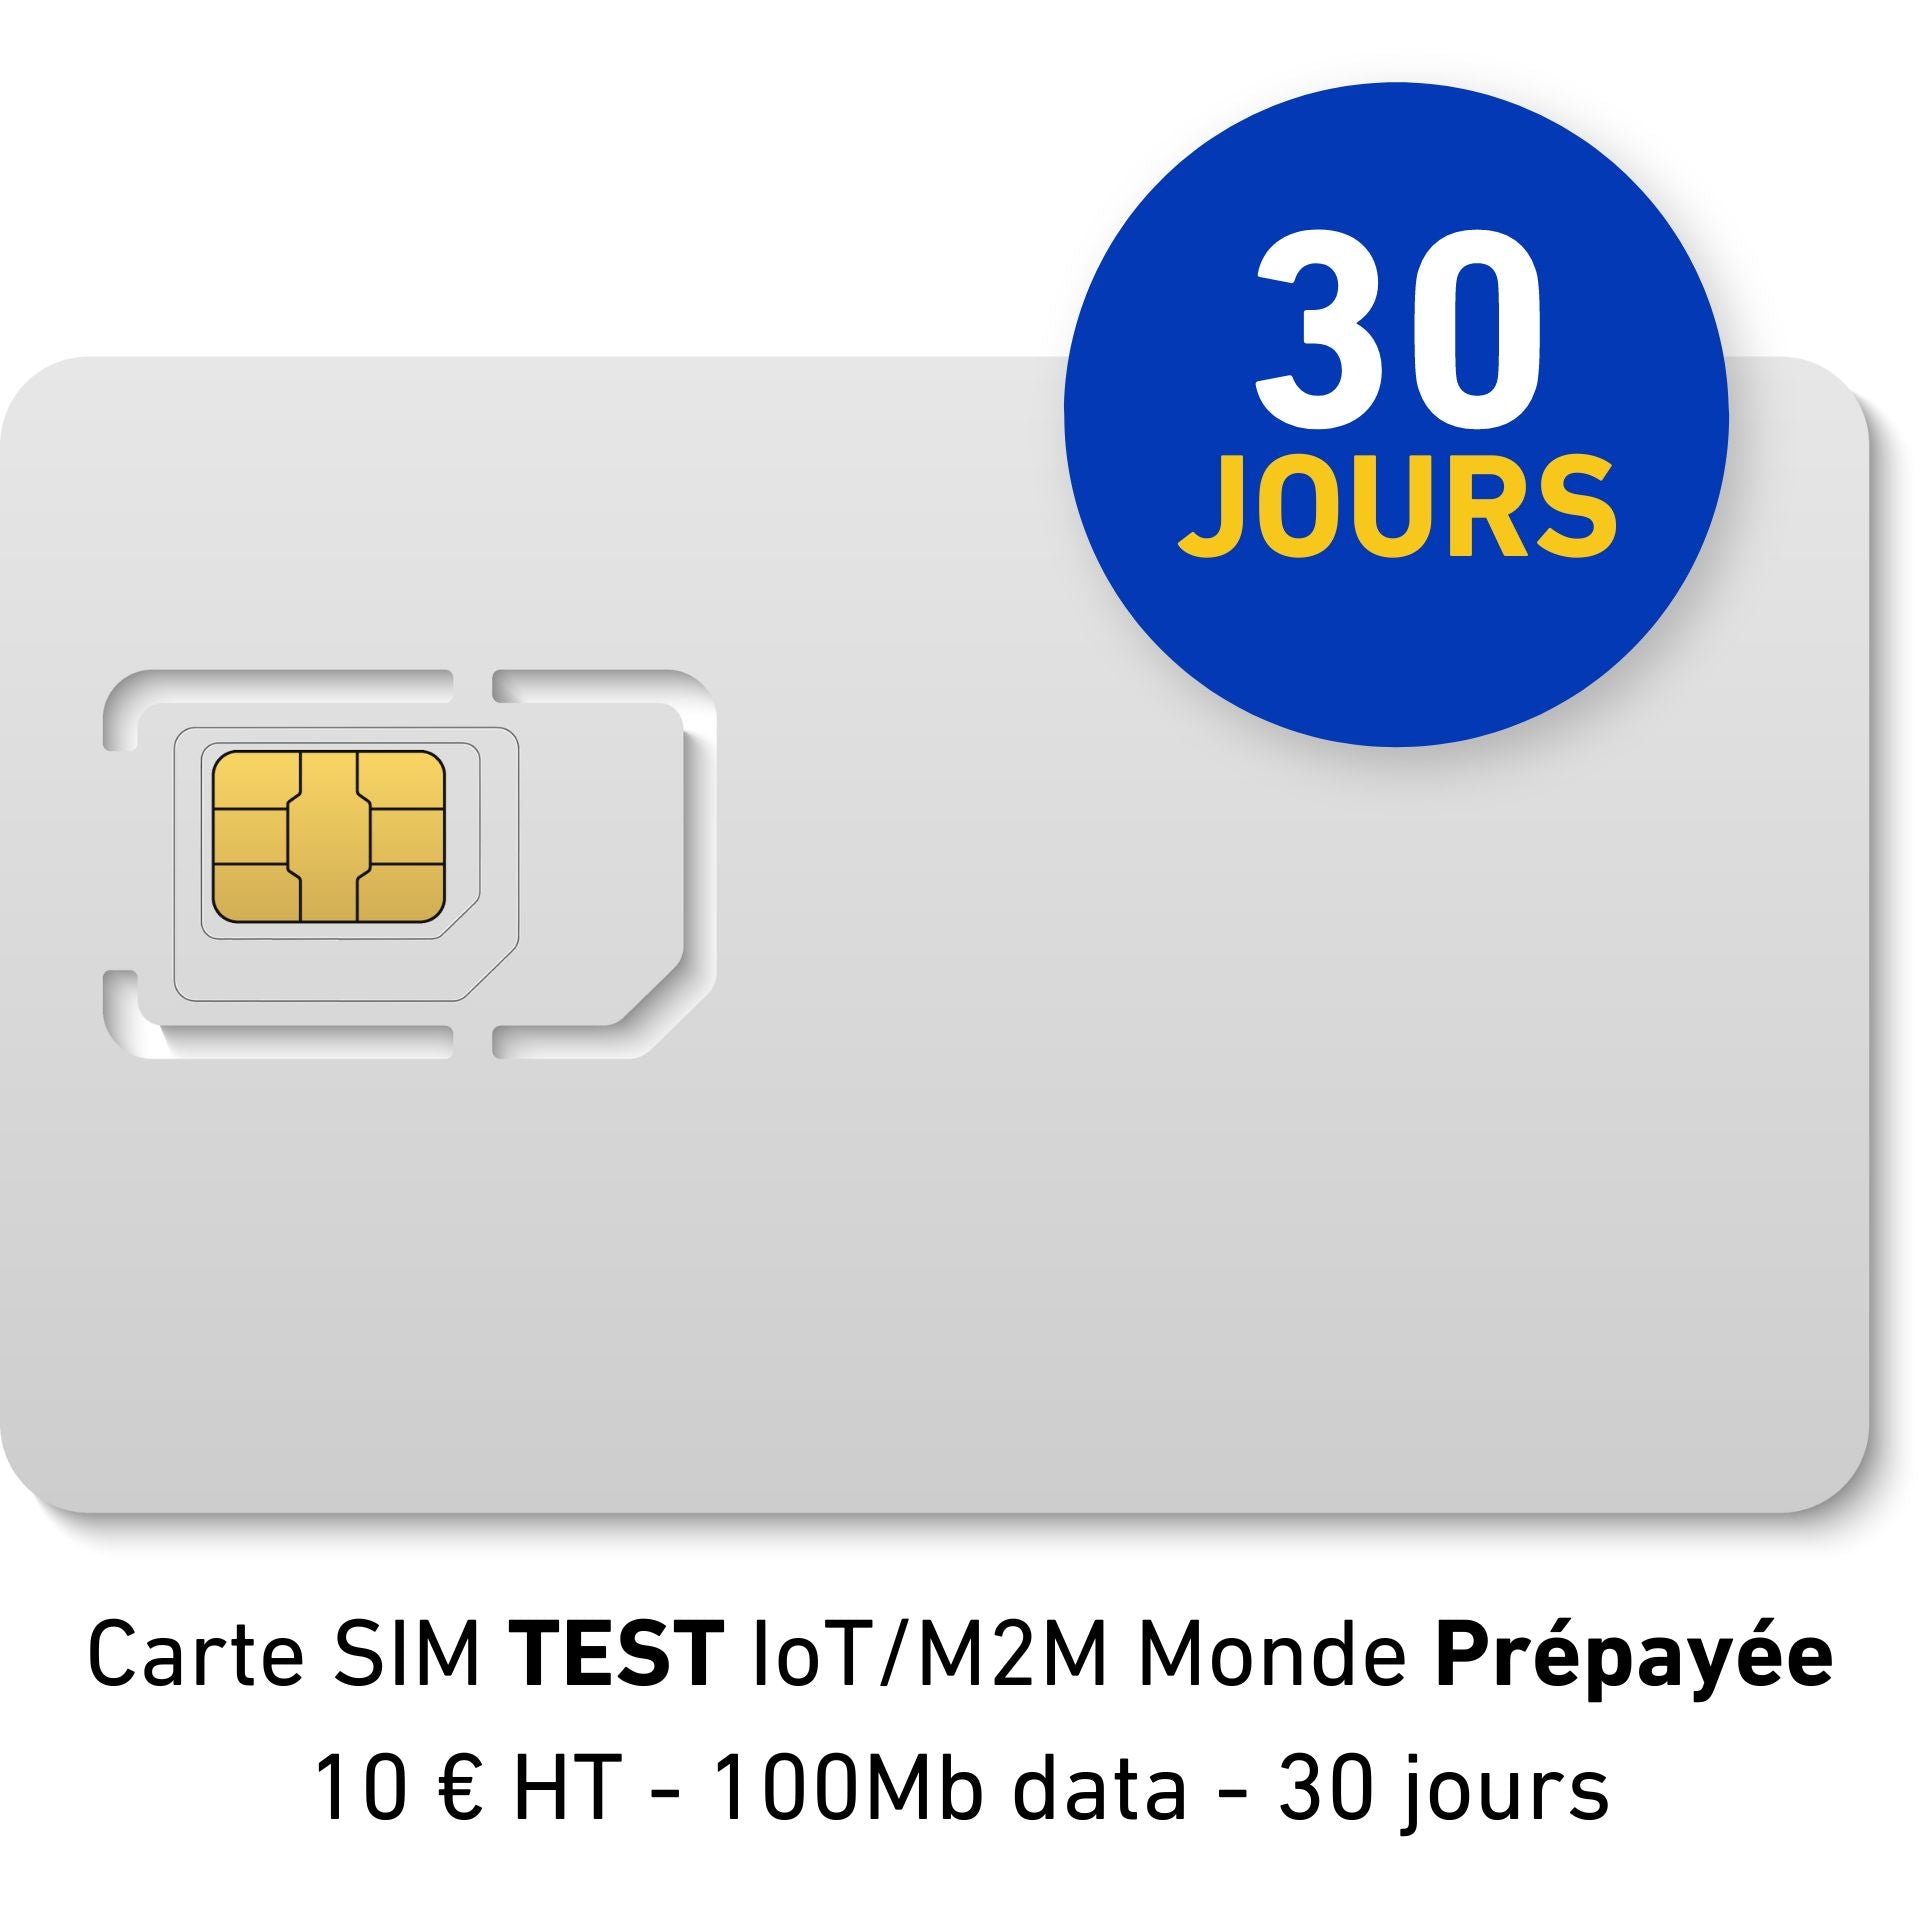 TEST IoT/M2M World Prepaid SIM-Karte - 10 € zzgl. MwSt. - 100Mb Daten - 30 Tage